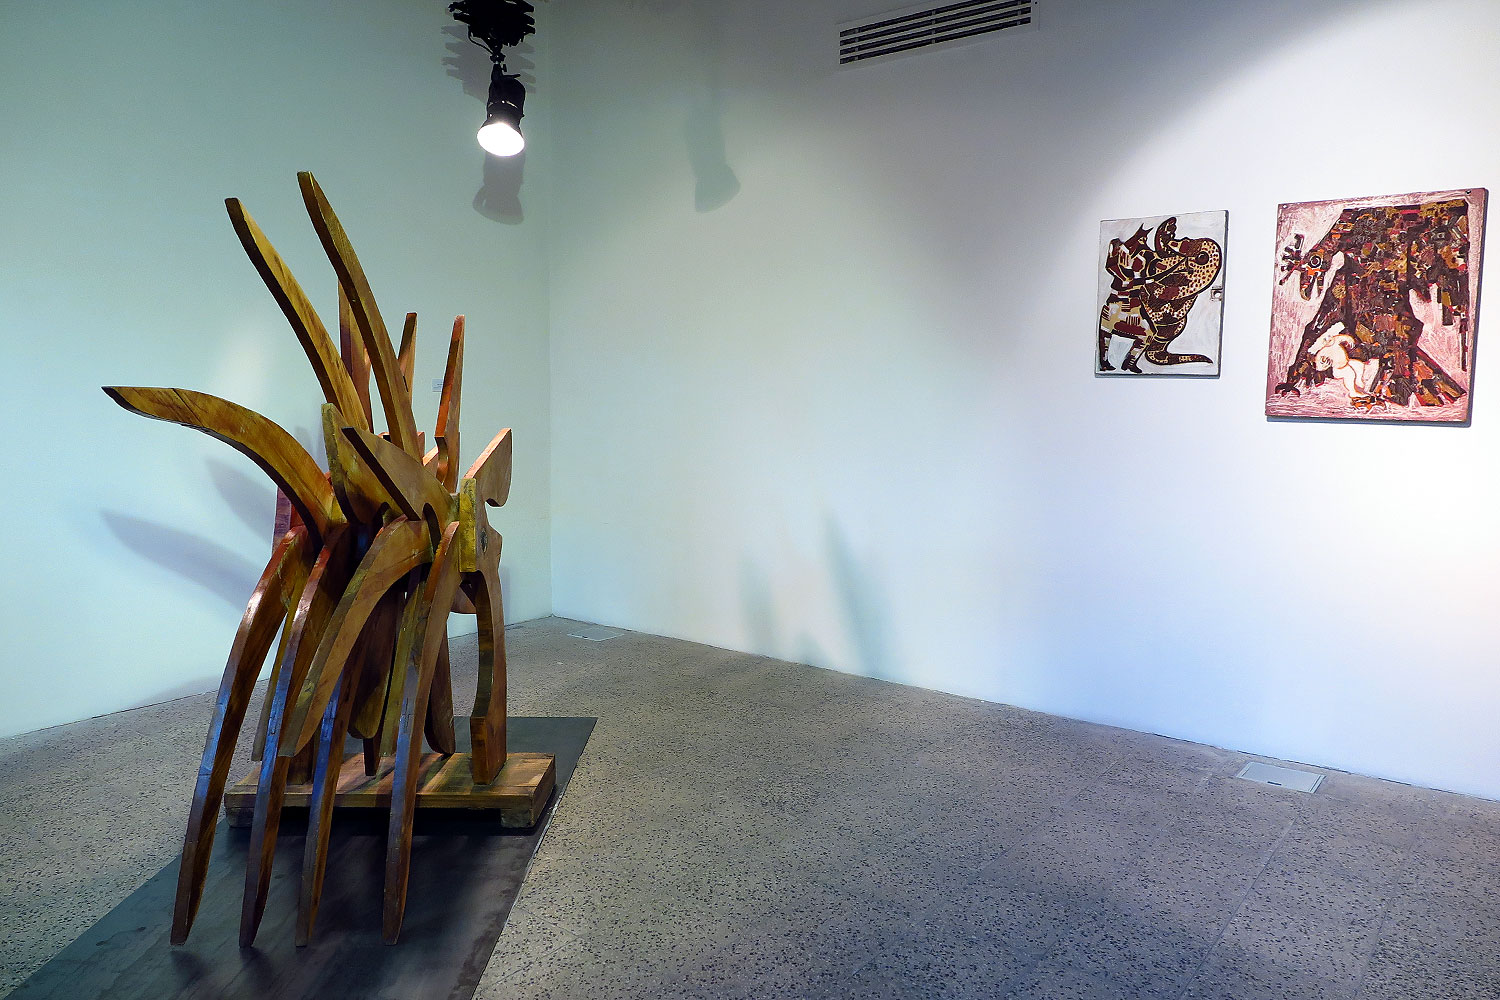 نمایشگاهی گروهی آثار ساخته شده با چوب در گالری پروژه های آران